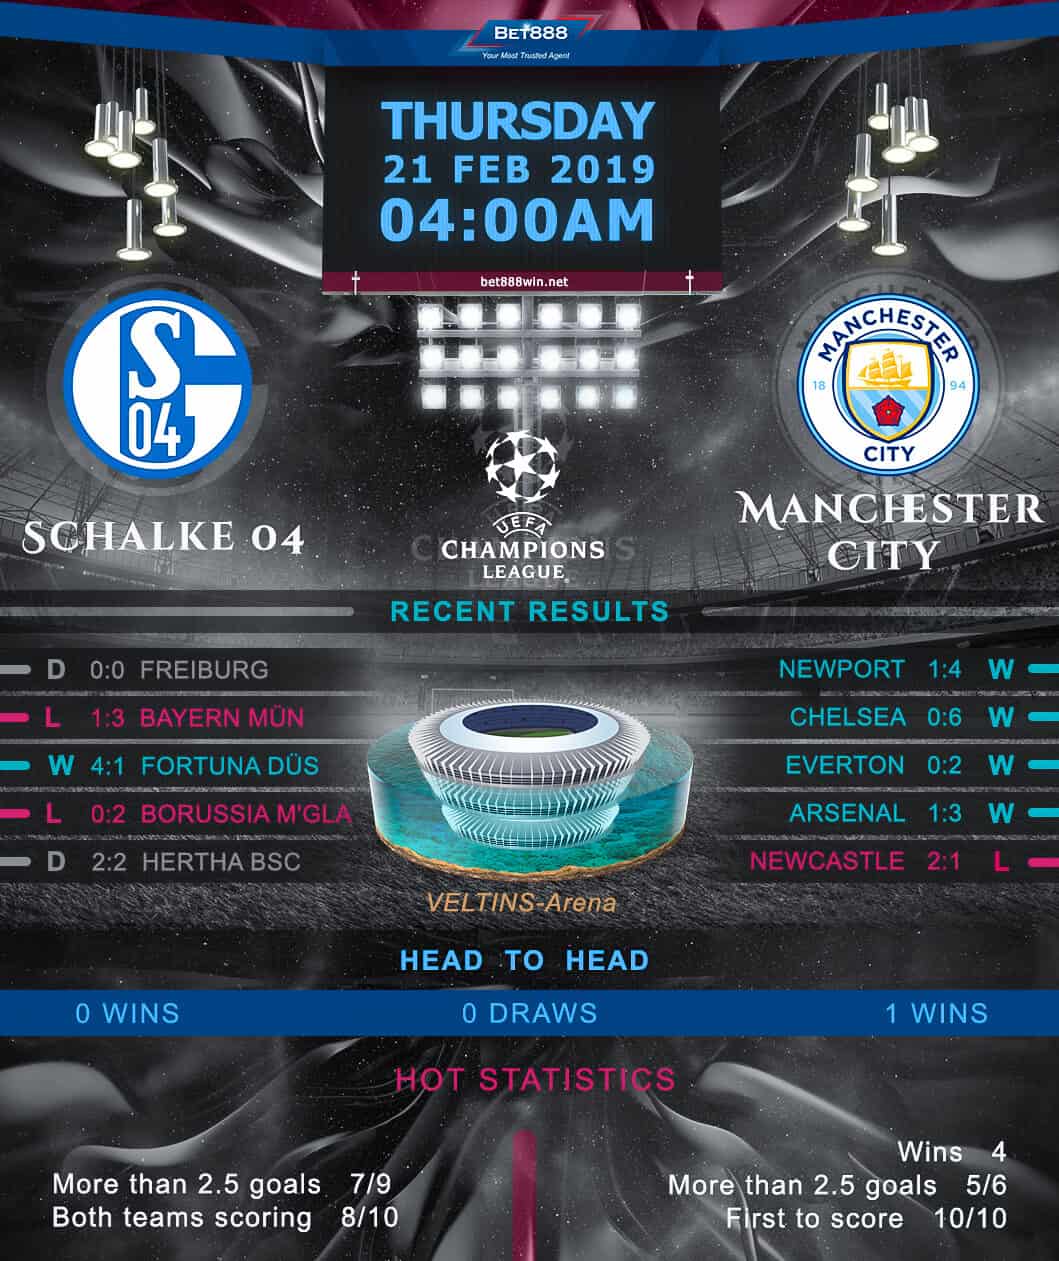 Schalke 04 vs Manchester City 21/02/19